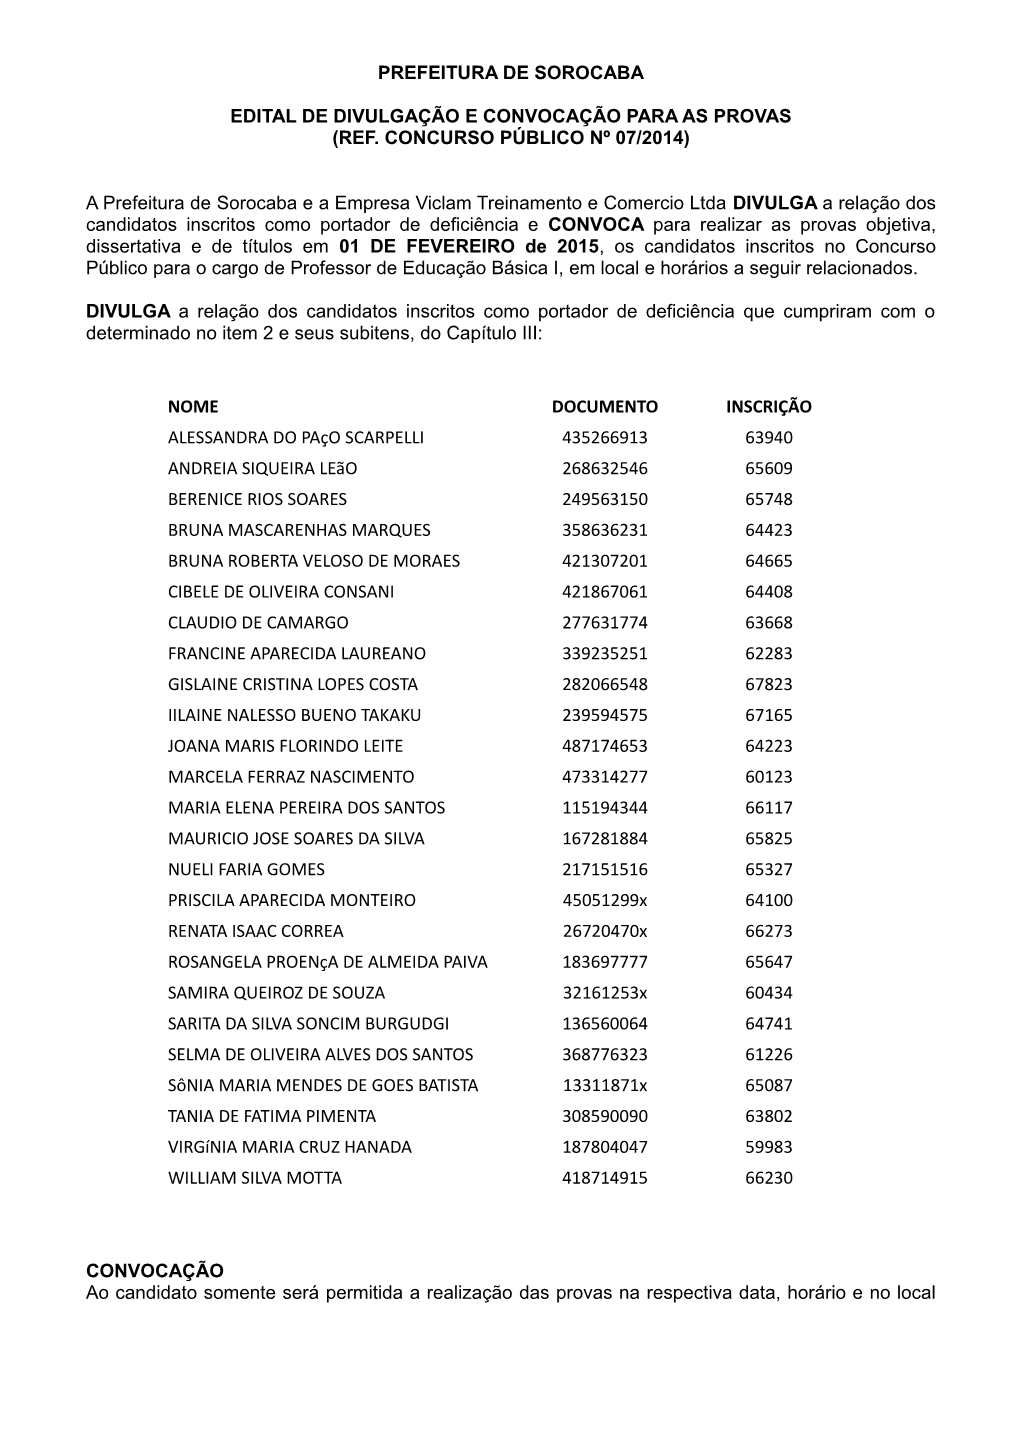 PREFEITURA DE SOROCABA EDITAL DE DIVULGAÇÃO E CONVOCAÇÃO PARA AS PROVAS (REF. CONCURSO PÚBLICO Nº 07/2014) a Prefeitura De